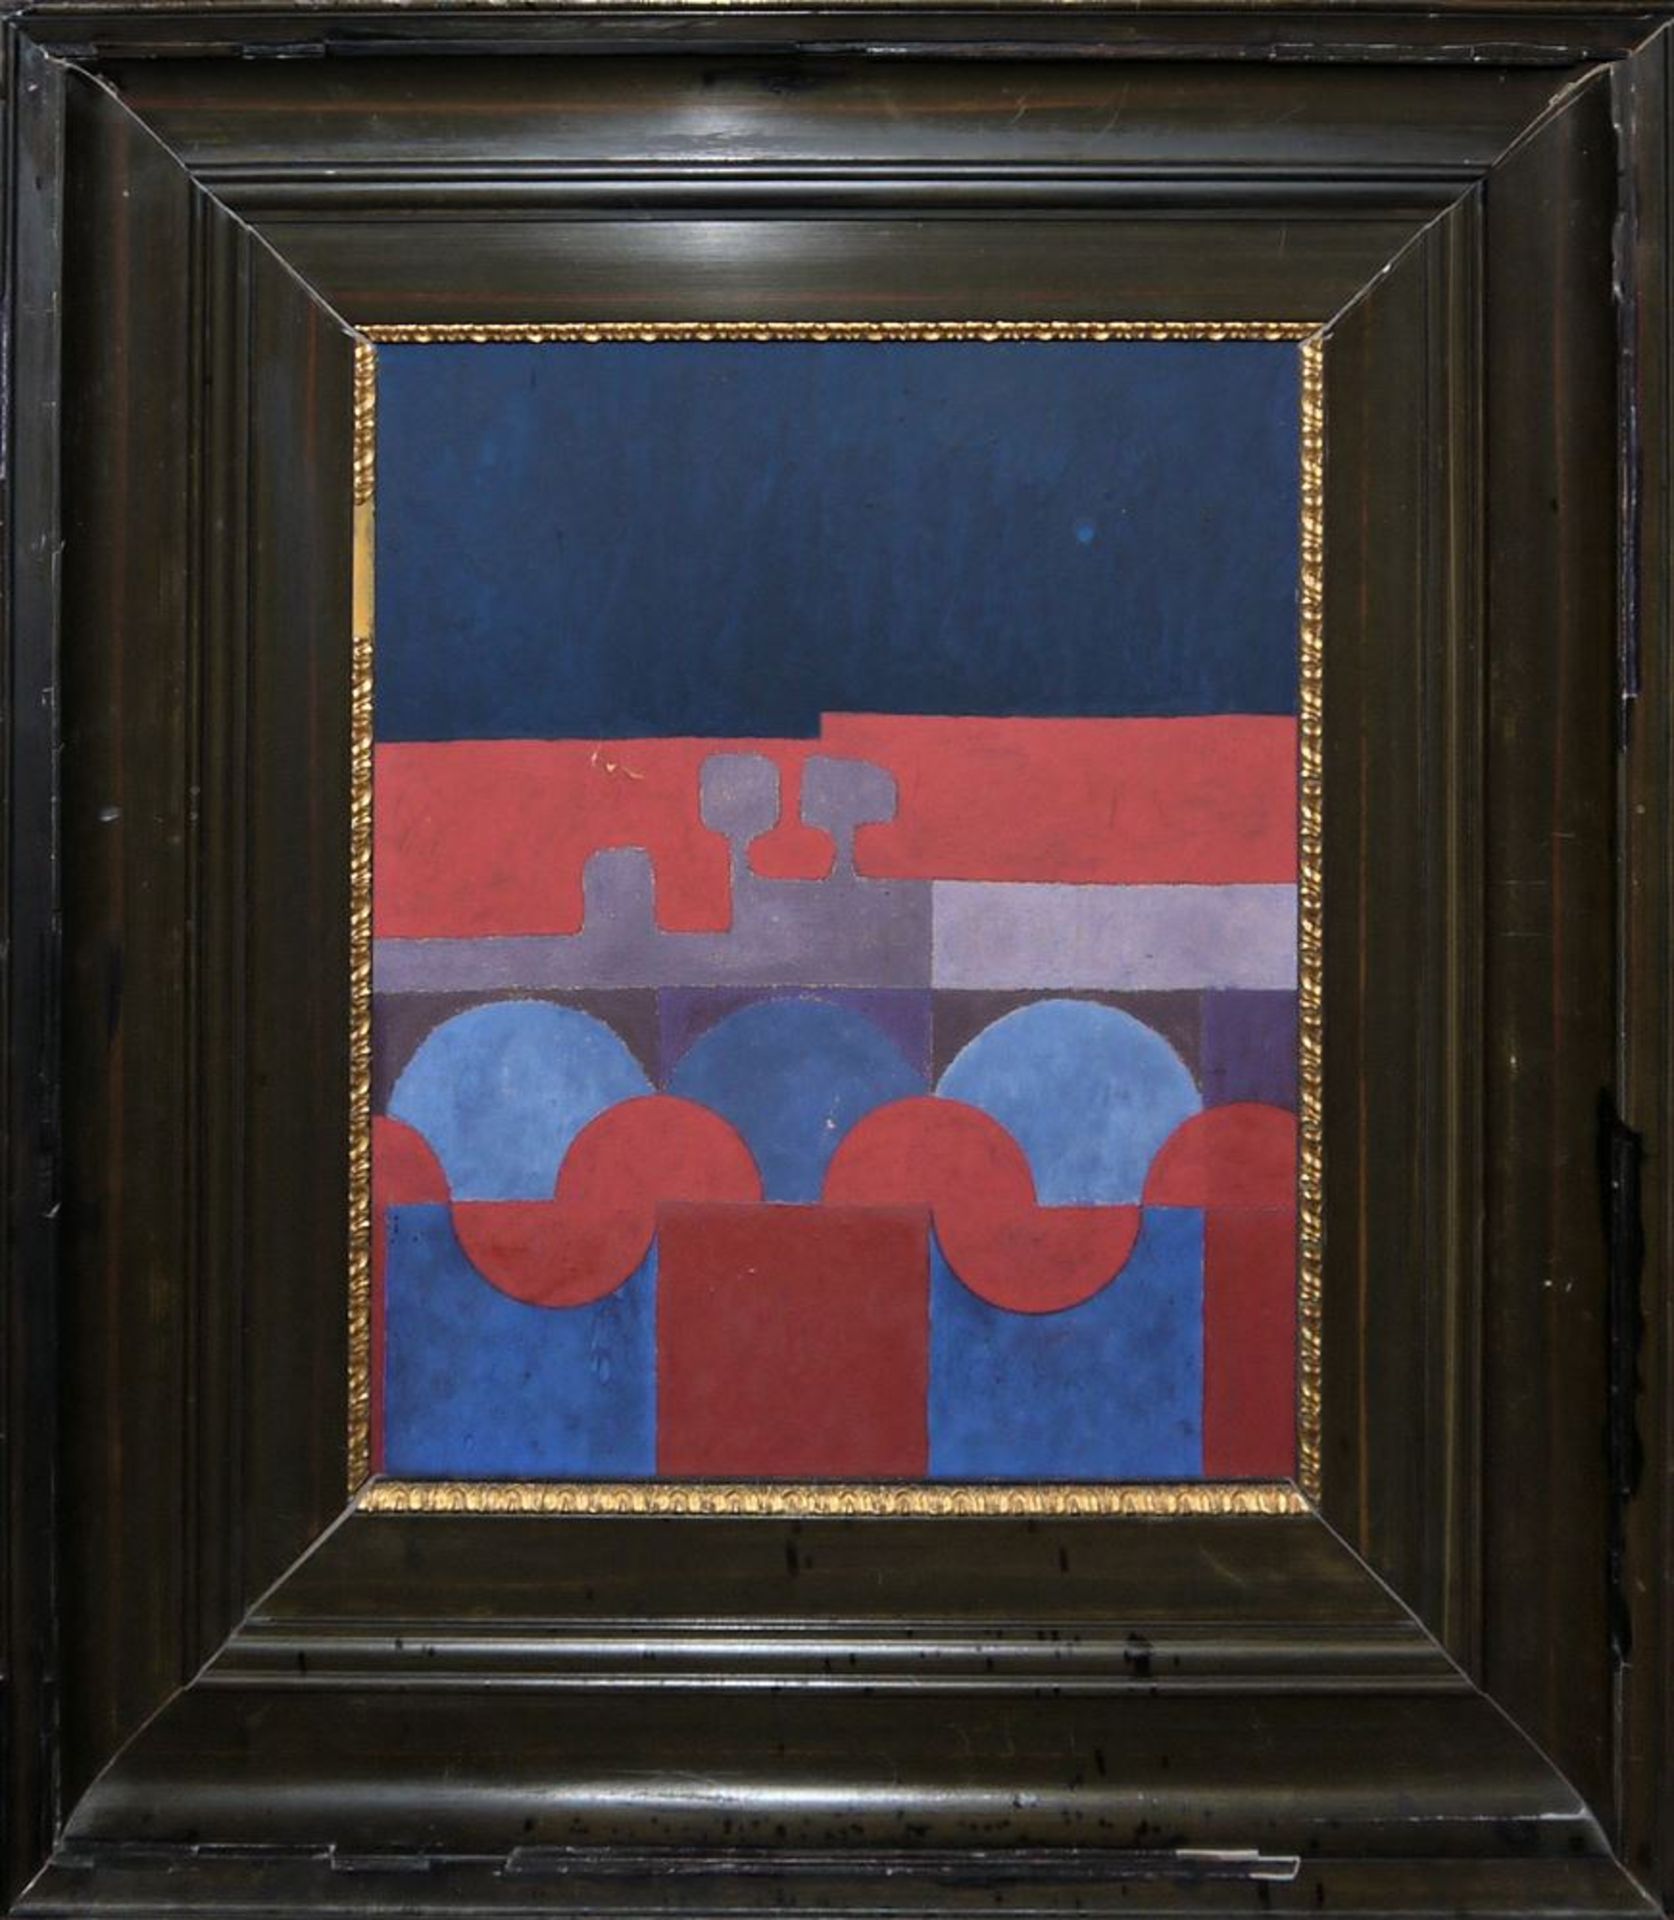 James Coignard, Colour Carborundum & Anonymous, geometric-abstract Ölgemälde, framed